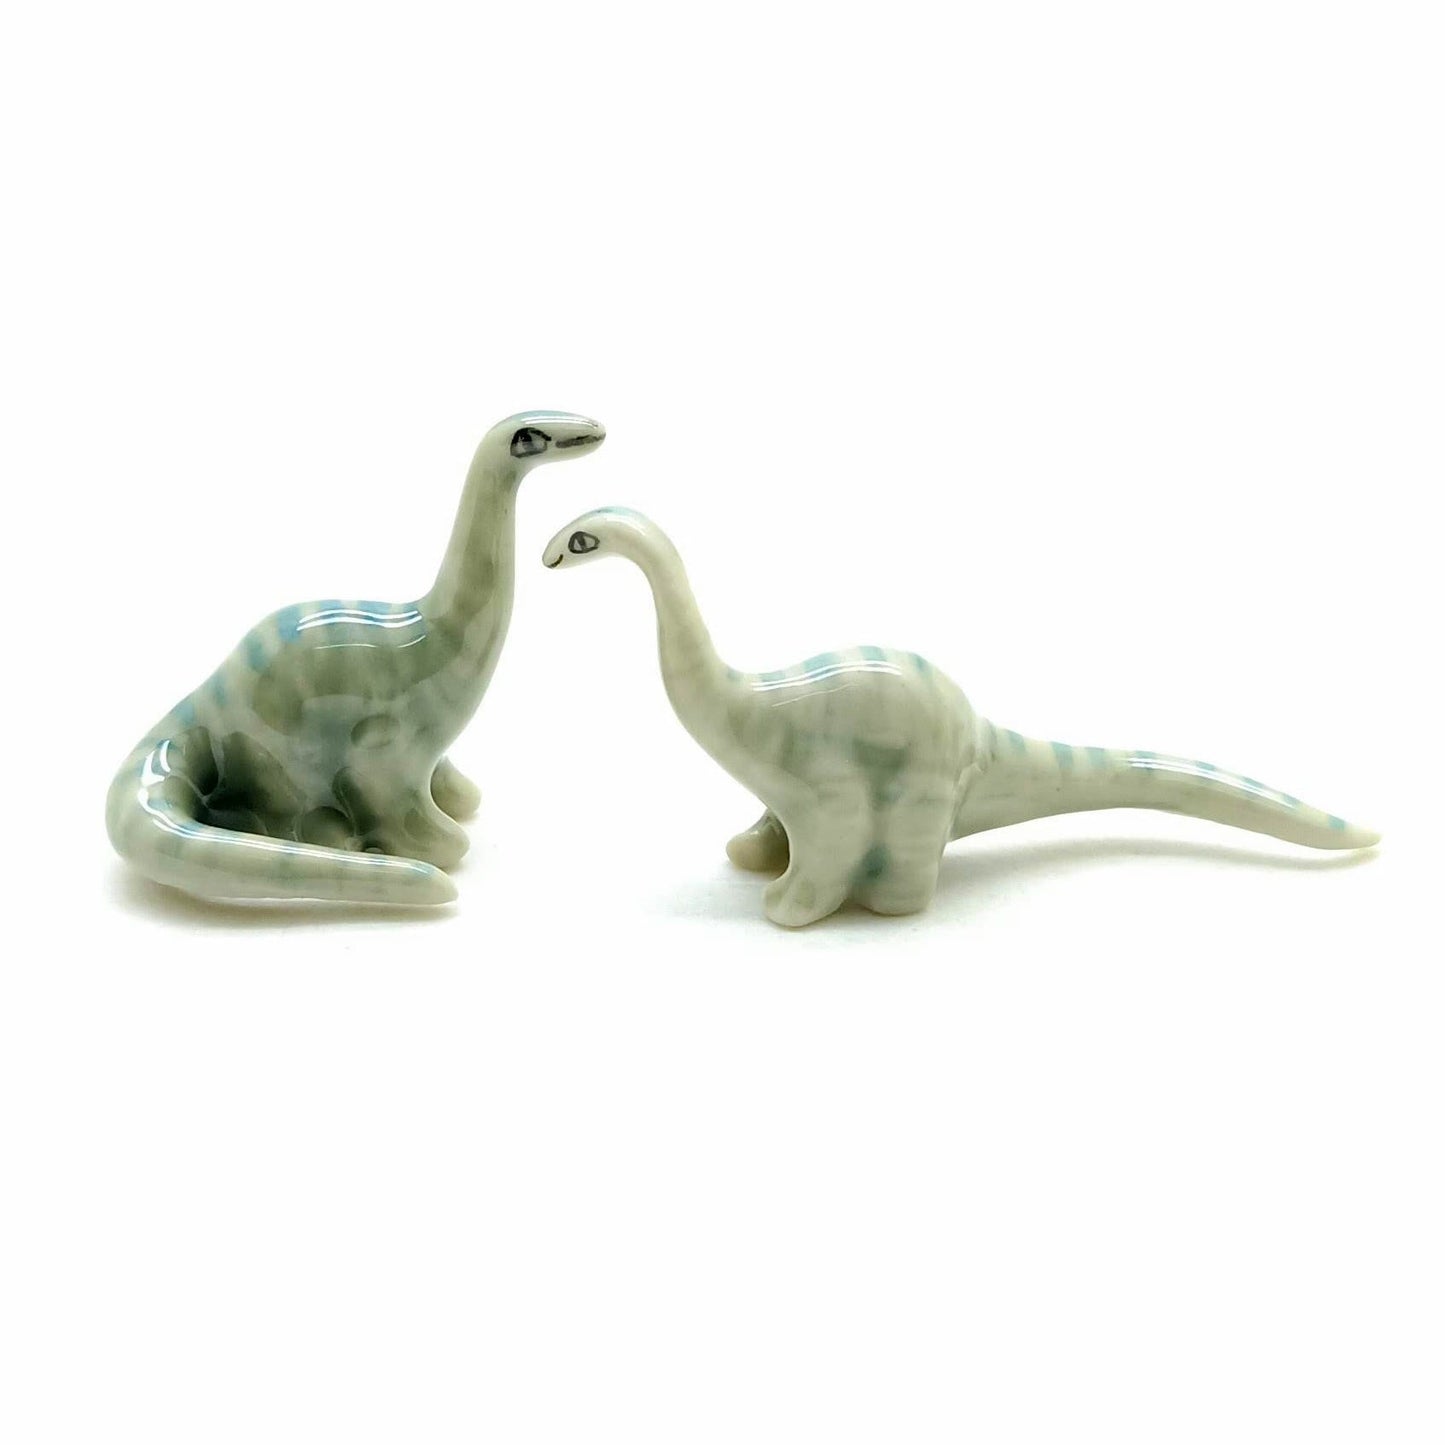 Set of 4 Dinosaur Brachiosaurus Ceramic Figurine Statue